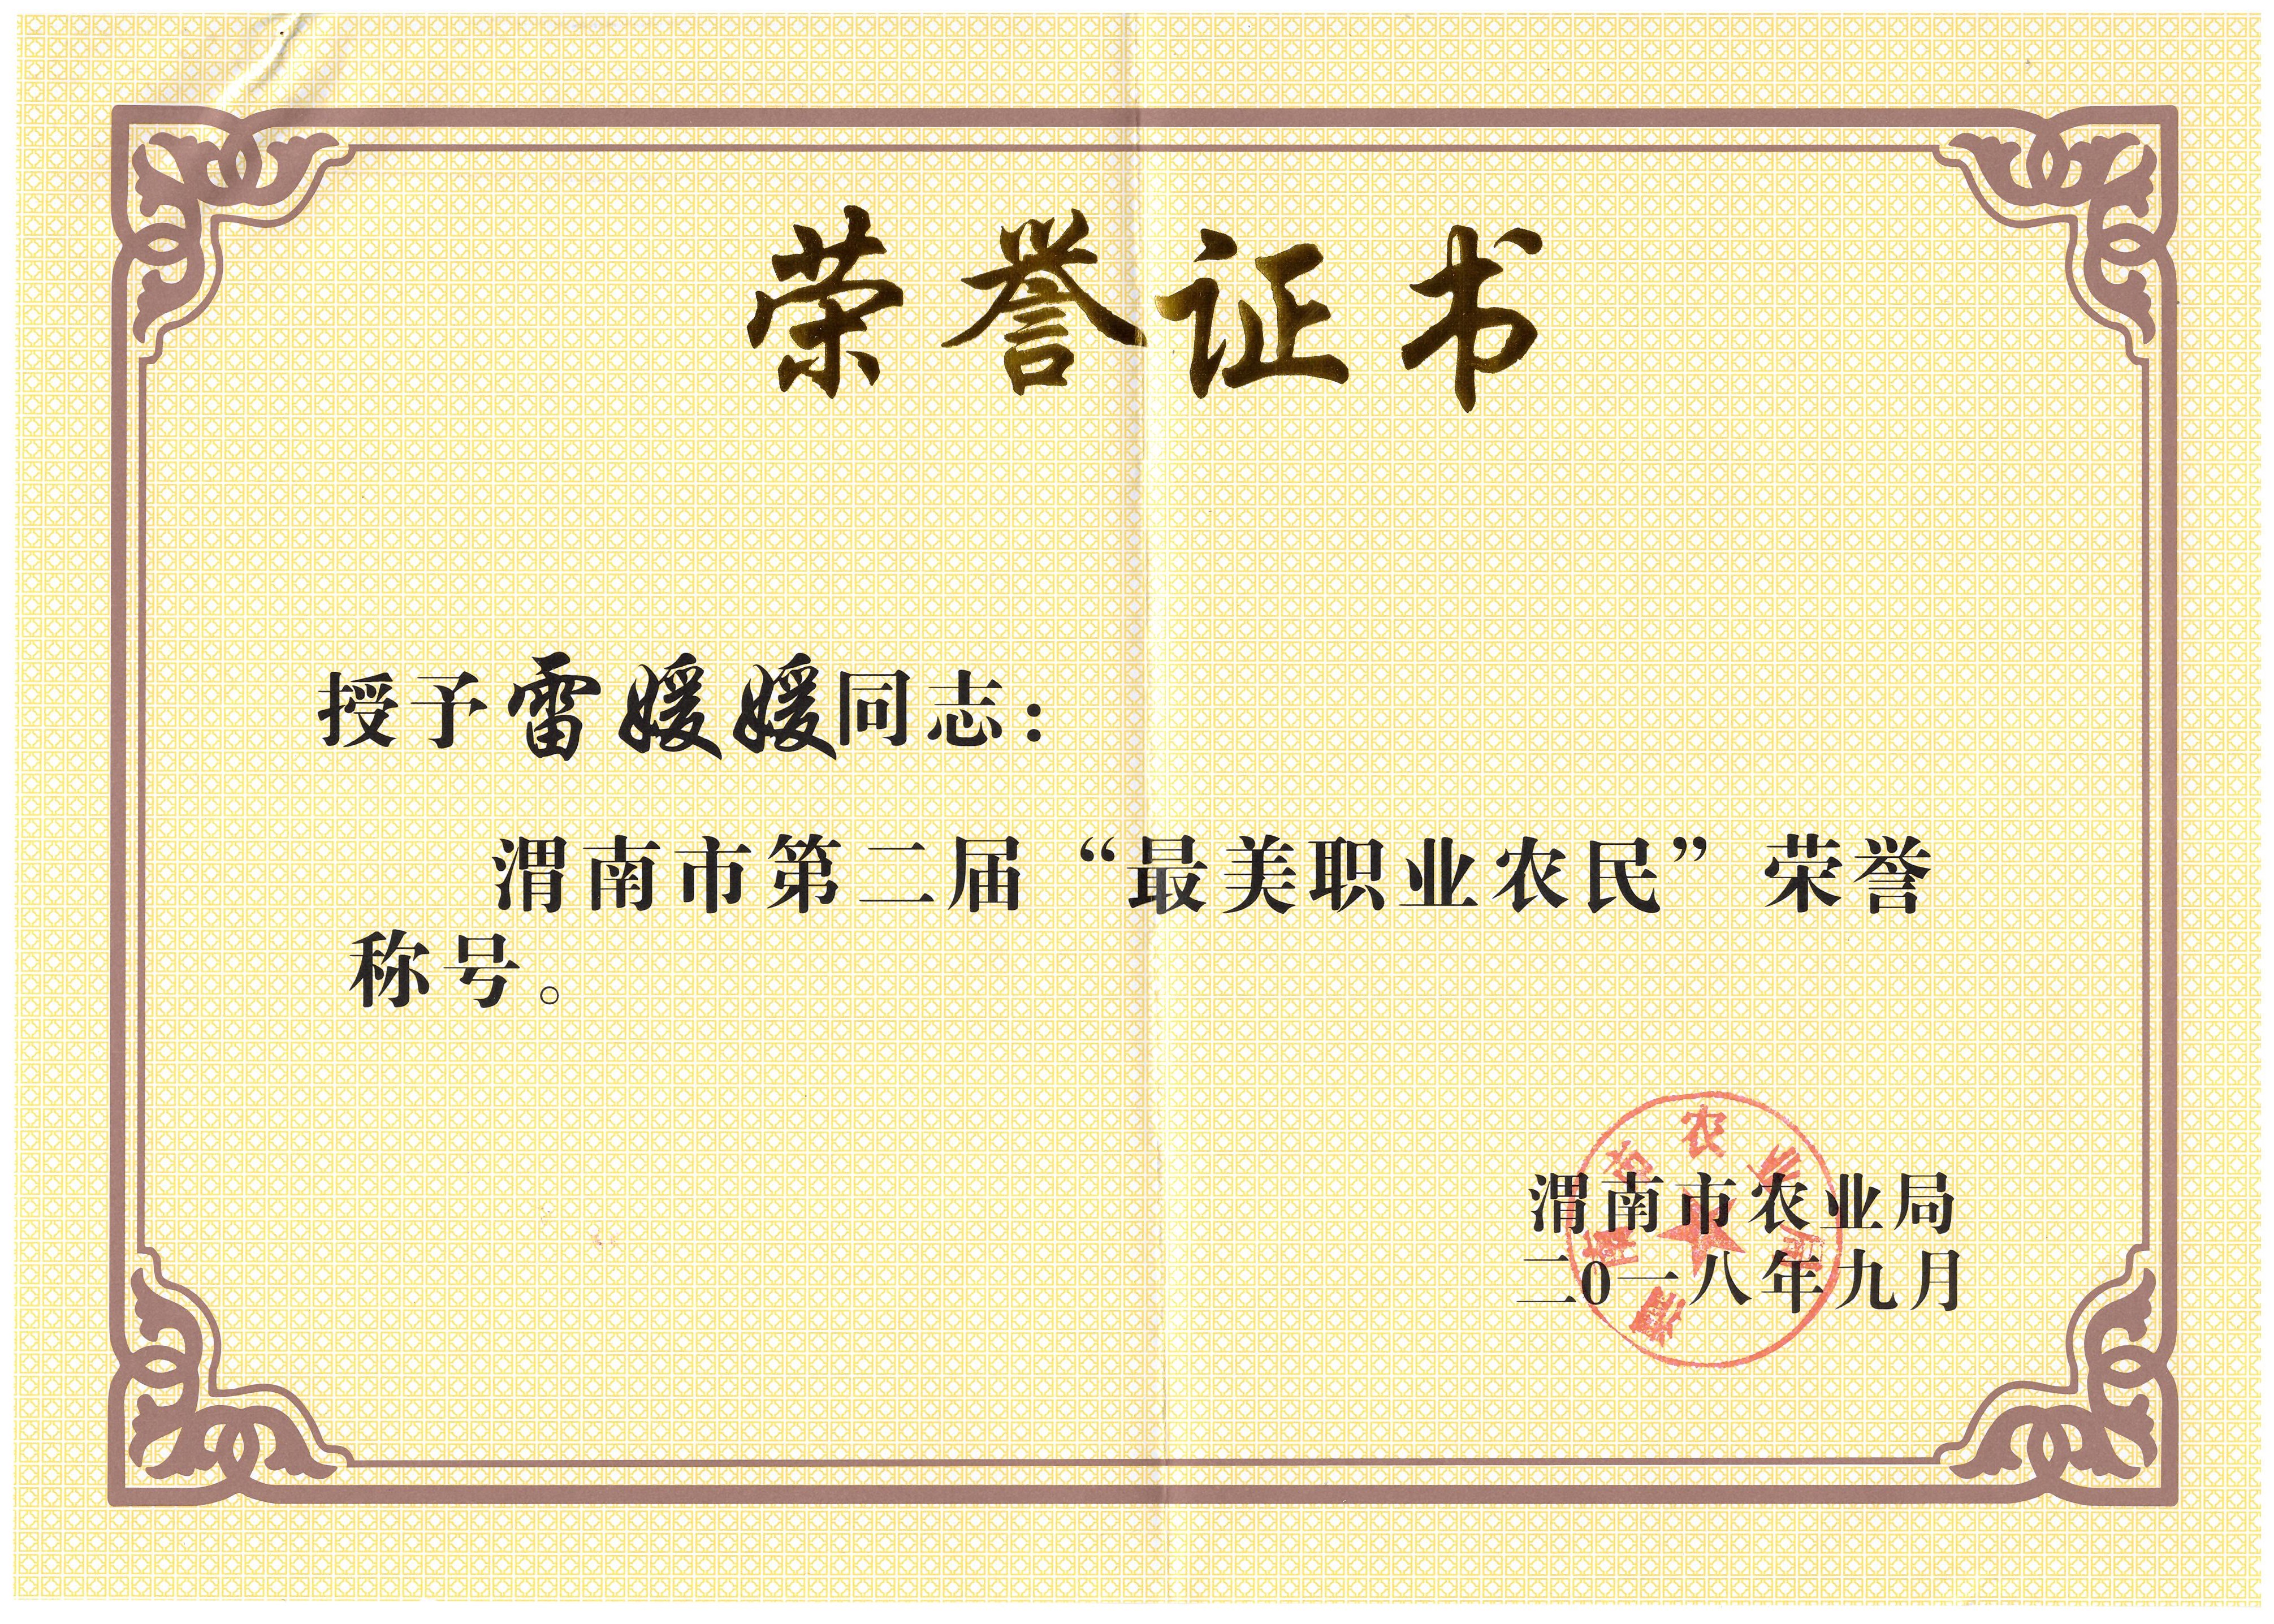 雷媛媛理事长被评为渭南市最美职业农民